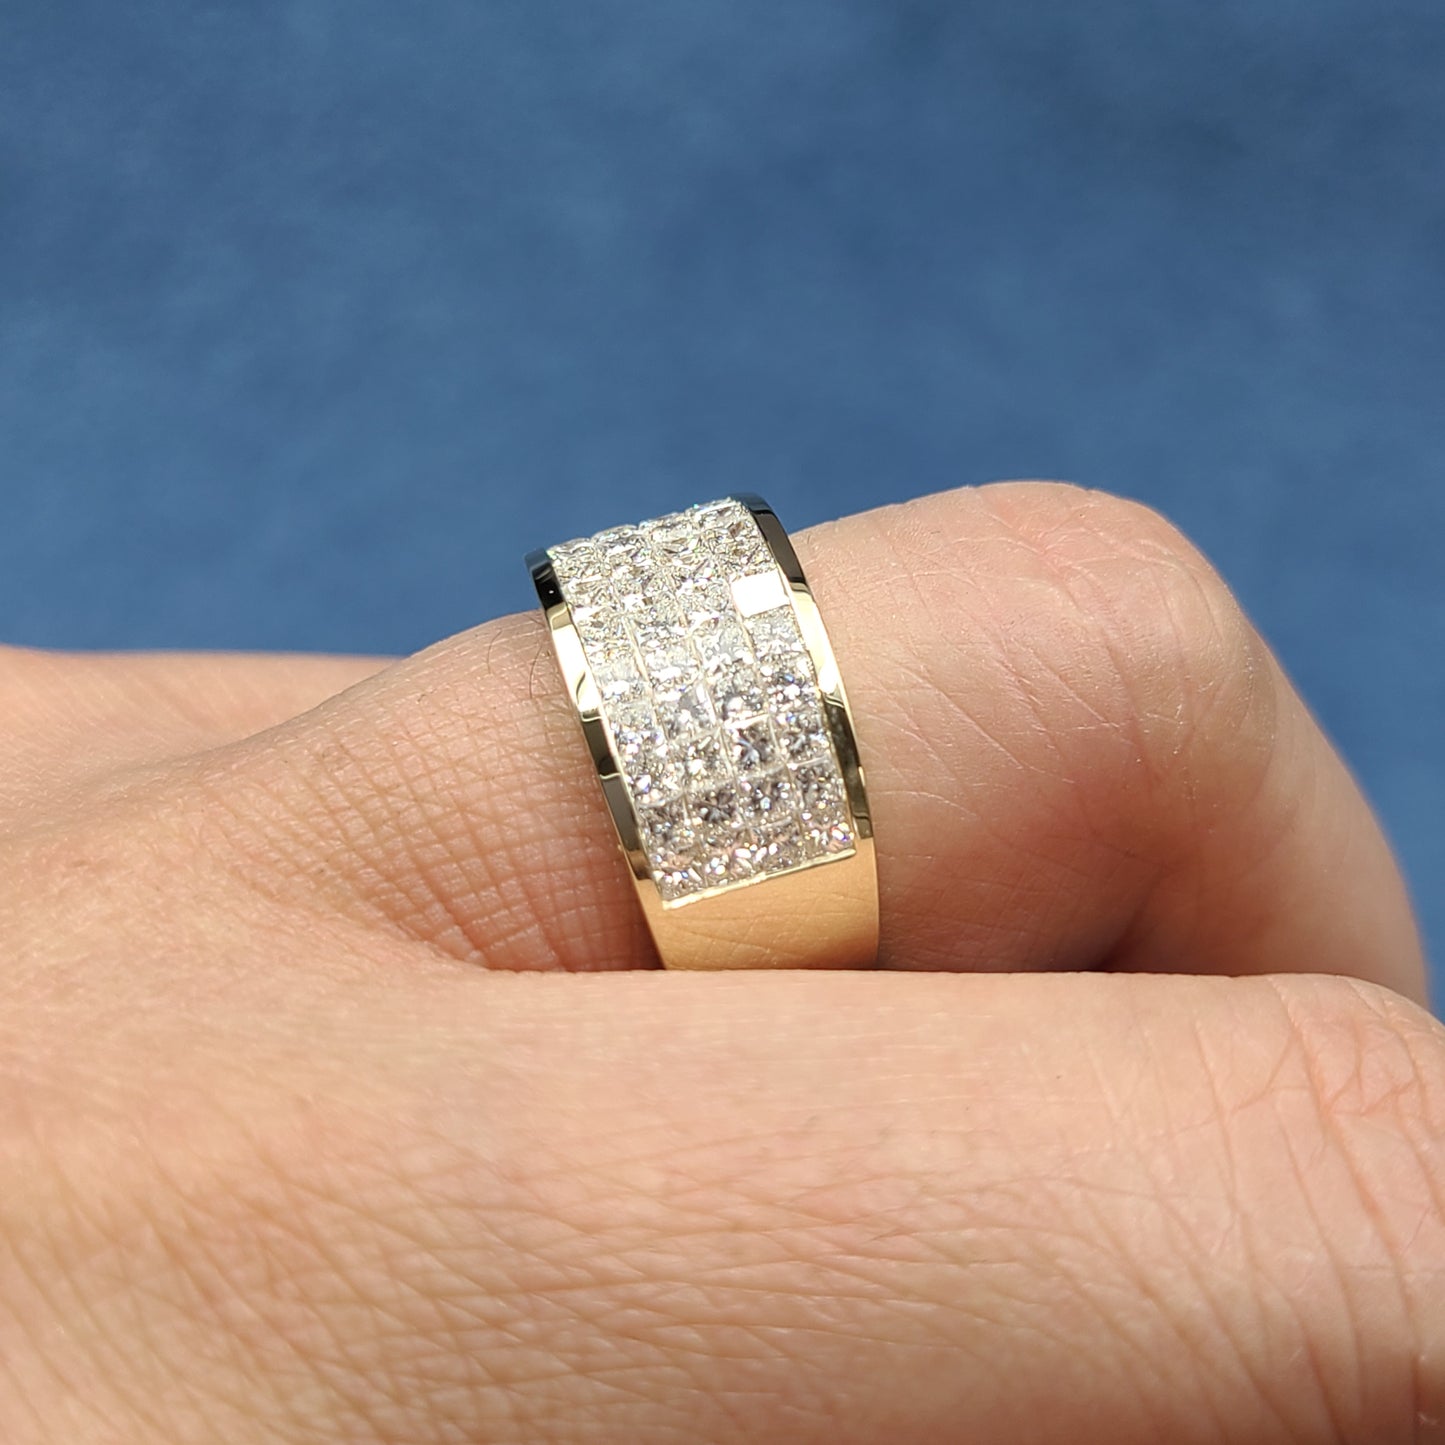 4 Row Invisible Set Half Natural Diamond Ring/ Half Diamond Anniversary Ring/ 14K,18K gold Princess Cut Diamond Ring/Anniversary Ring